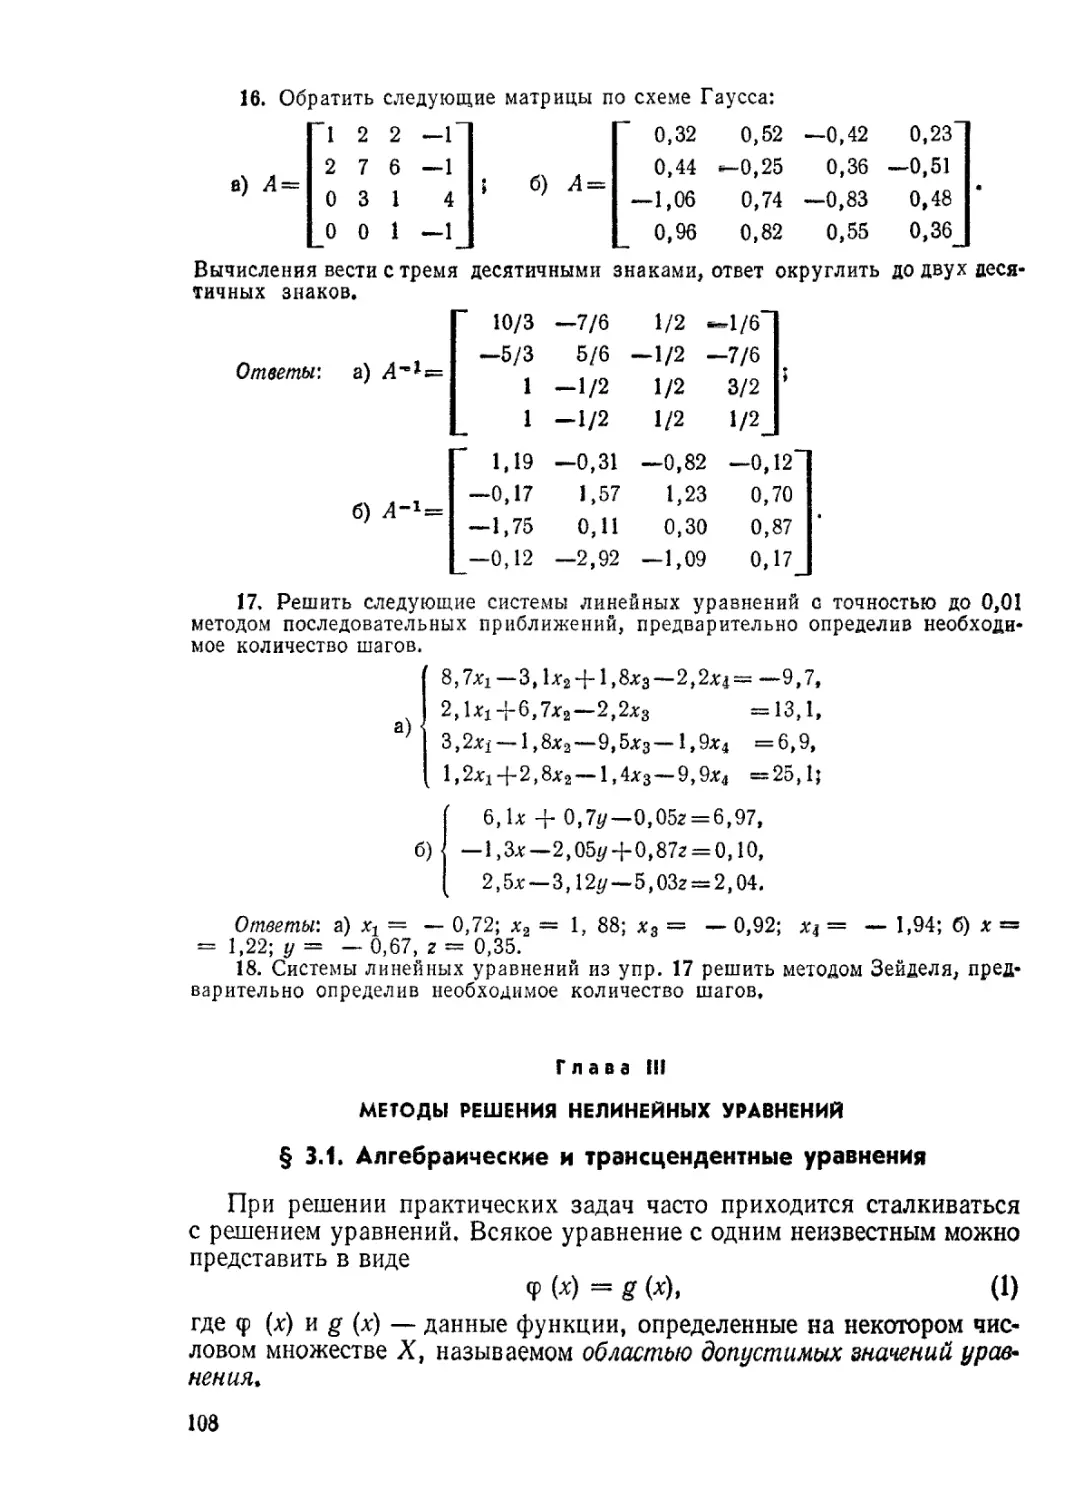 ГЛАВА III. МЕТОДЫ РЕШЕНИЯ НЕЛИНЕЙНЫХ УРАВНЕНИЙ
§ 3.1. Алгебраические и трансцендентные уравнения